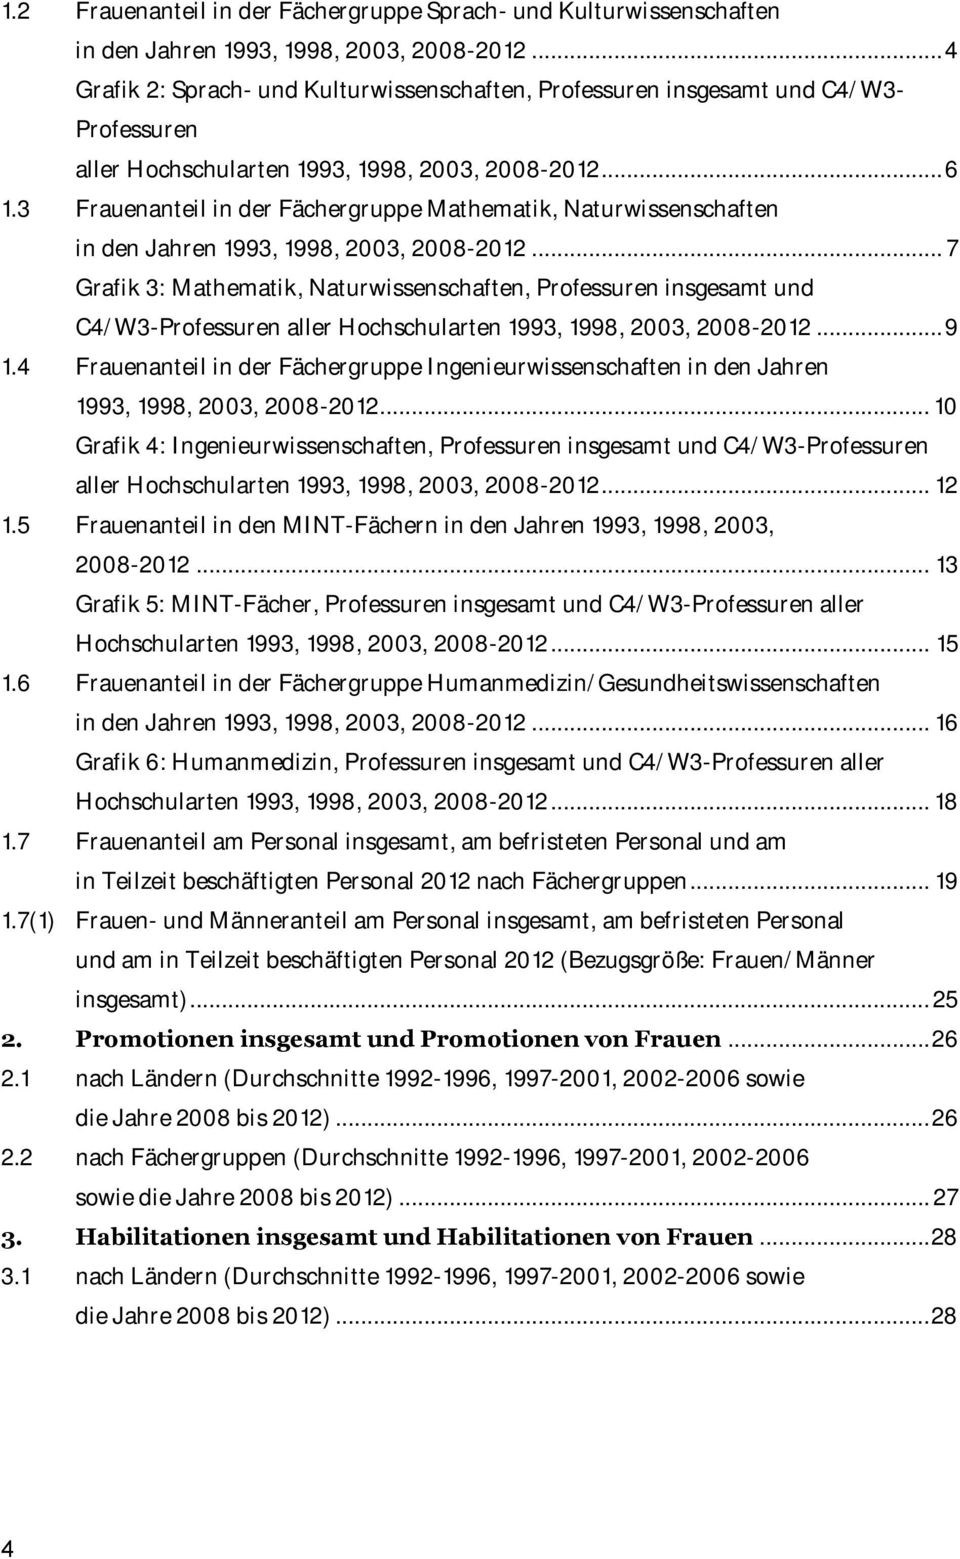 3 anteil in der Fächergruppe Mathematik, Naturwissenschaften in den Jahren 1993, 1998, 2003, 2008-2012.